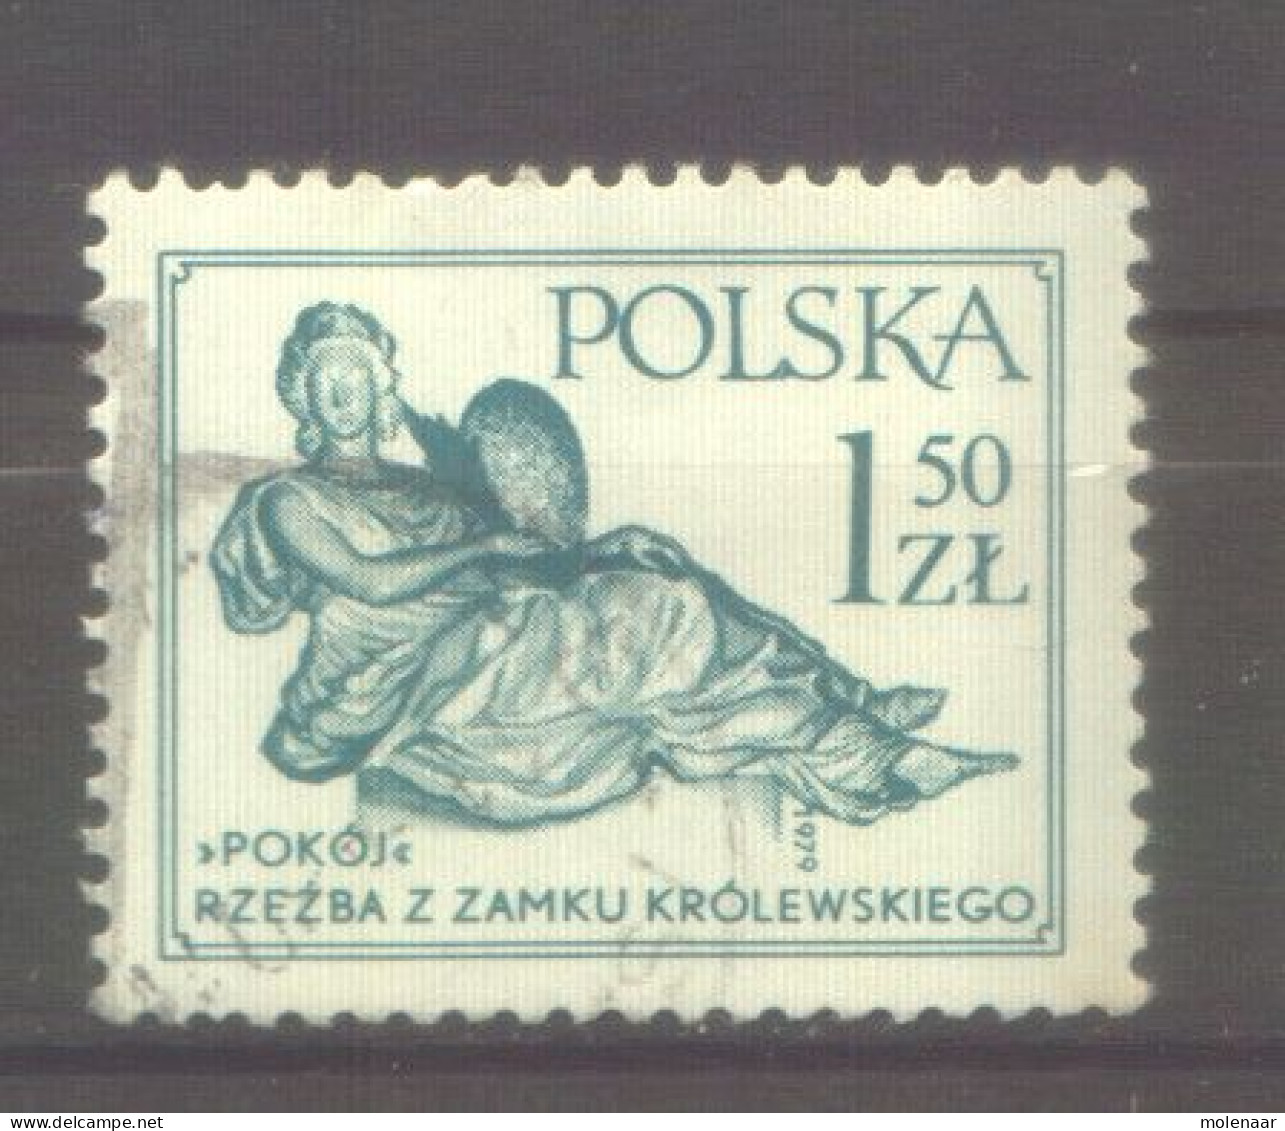 Postzegels > Europa > Polen > 1944-.... Republiek > 1971-80 > Gebruikt No. 2625  (12165) - Used Stamps